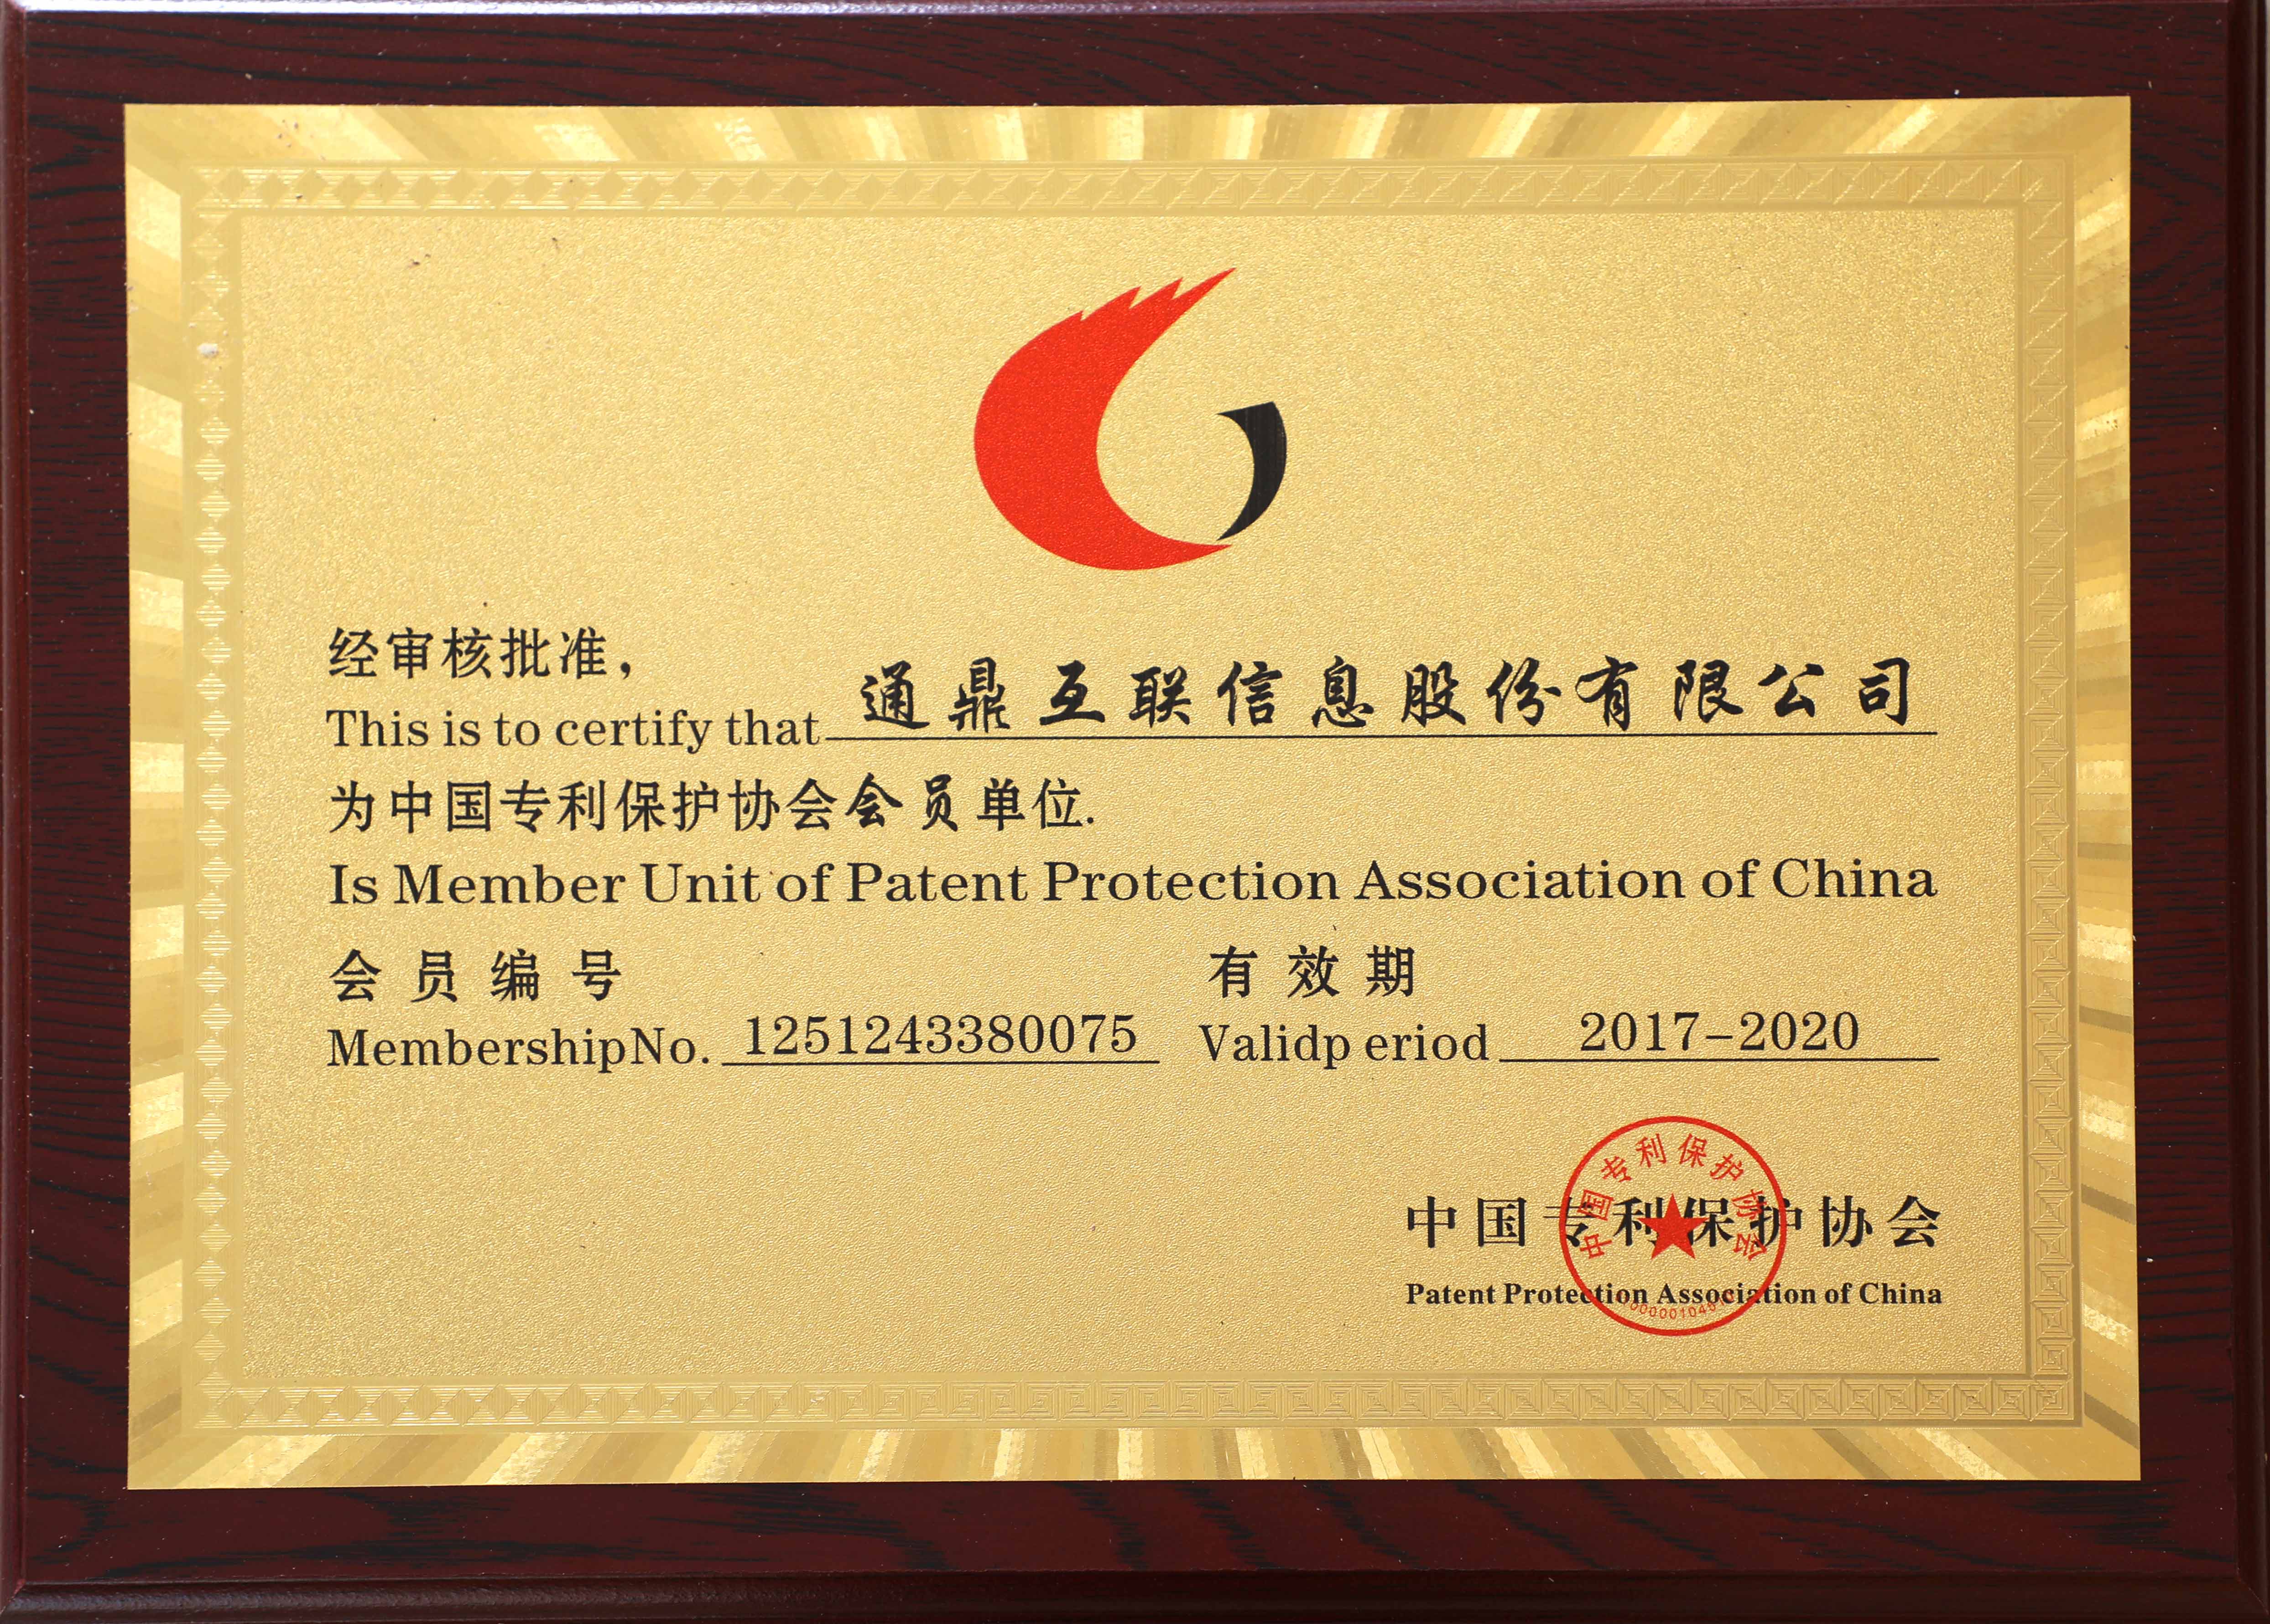 73-20191129中国专利保护协会会员单位